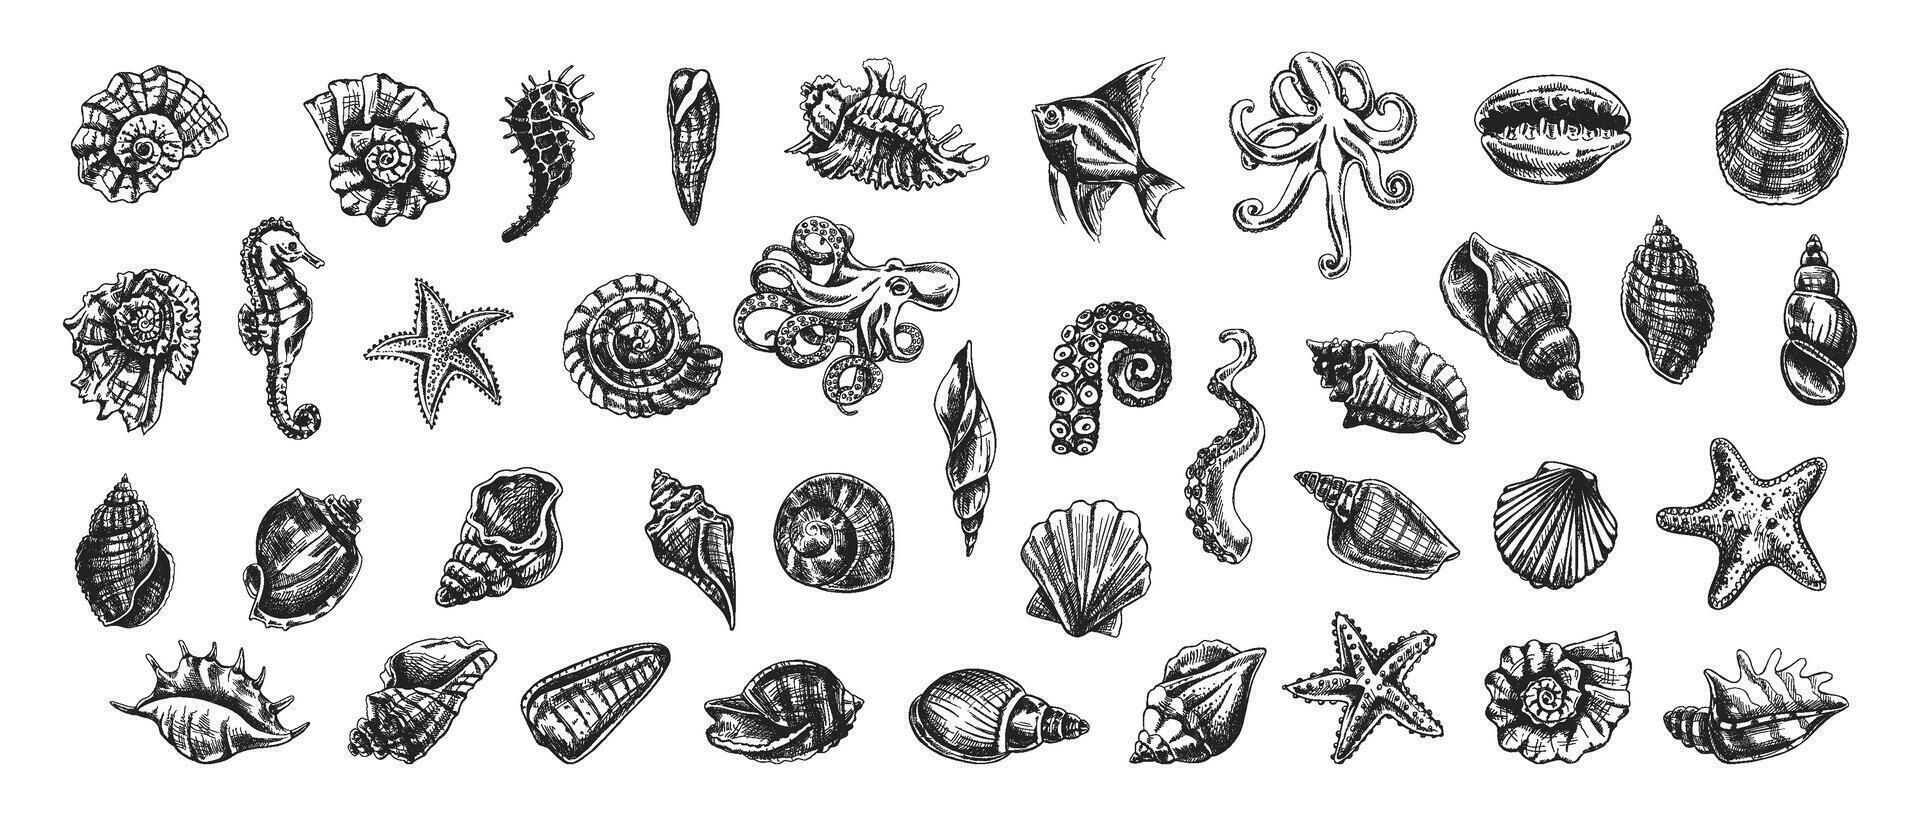 conchas marinas, pulpo, pez, estrella de mar, caballitos de mar, amonita vector colocar. mano dibujado bosquejo ilustración. colección de realista bocetos de varios Oceano criaturas aislado en blanco antecedentes.